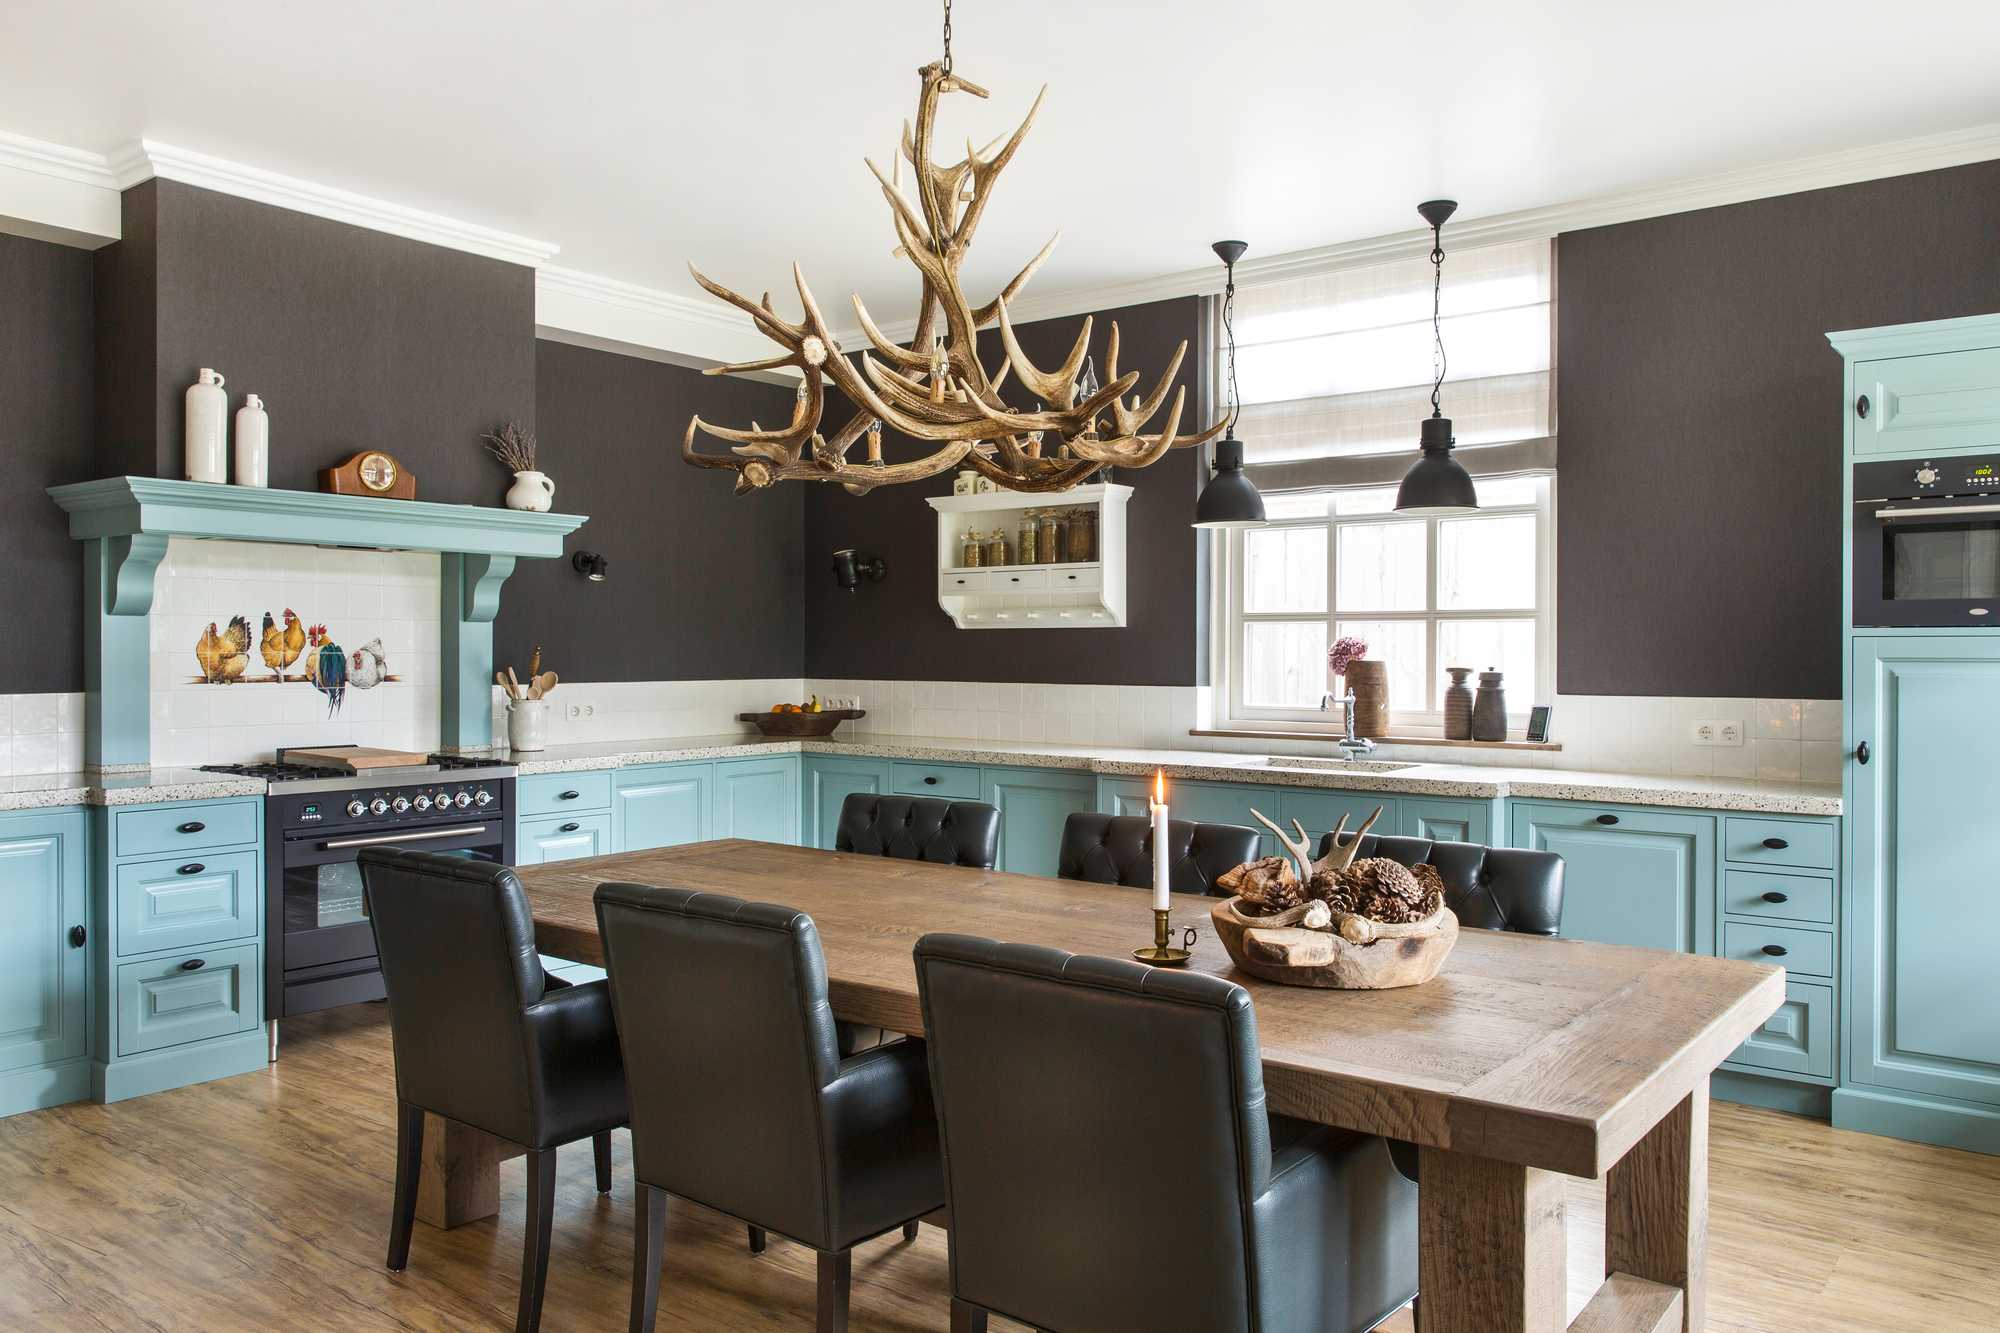 bk blauwe keuken met houten eettafel en hanglampen